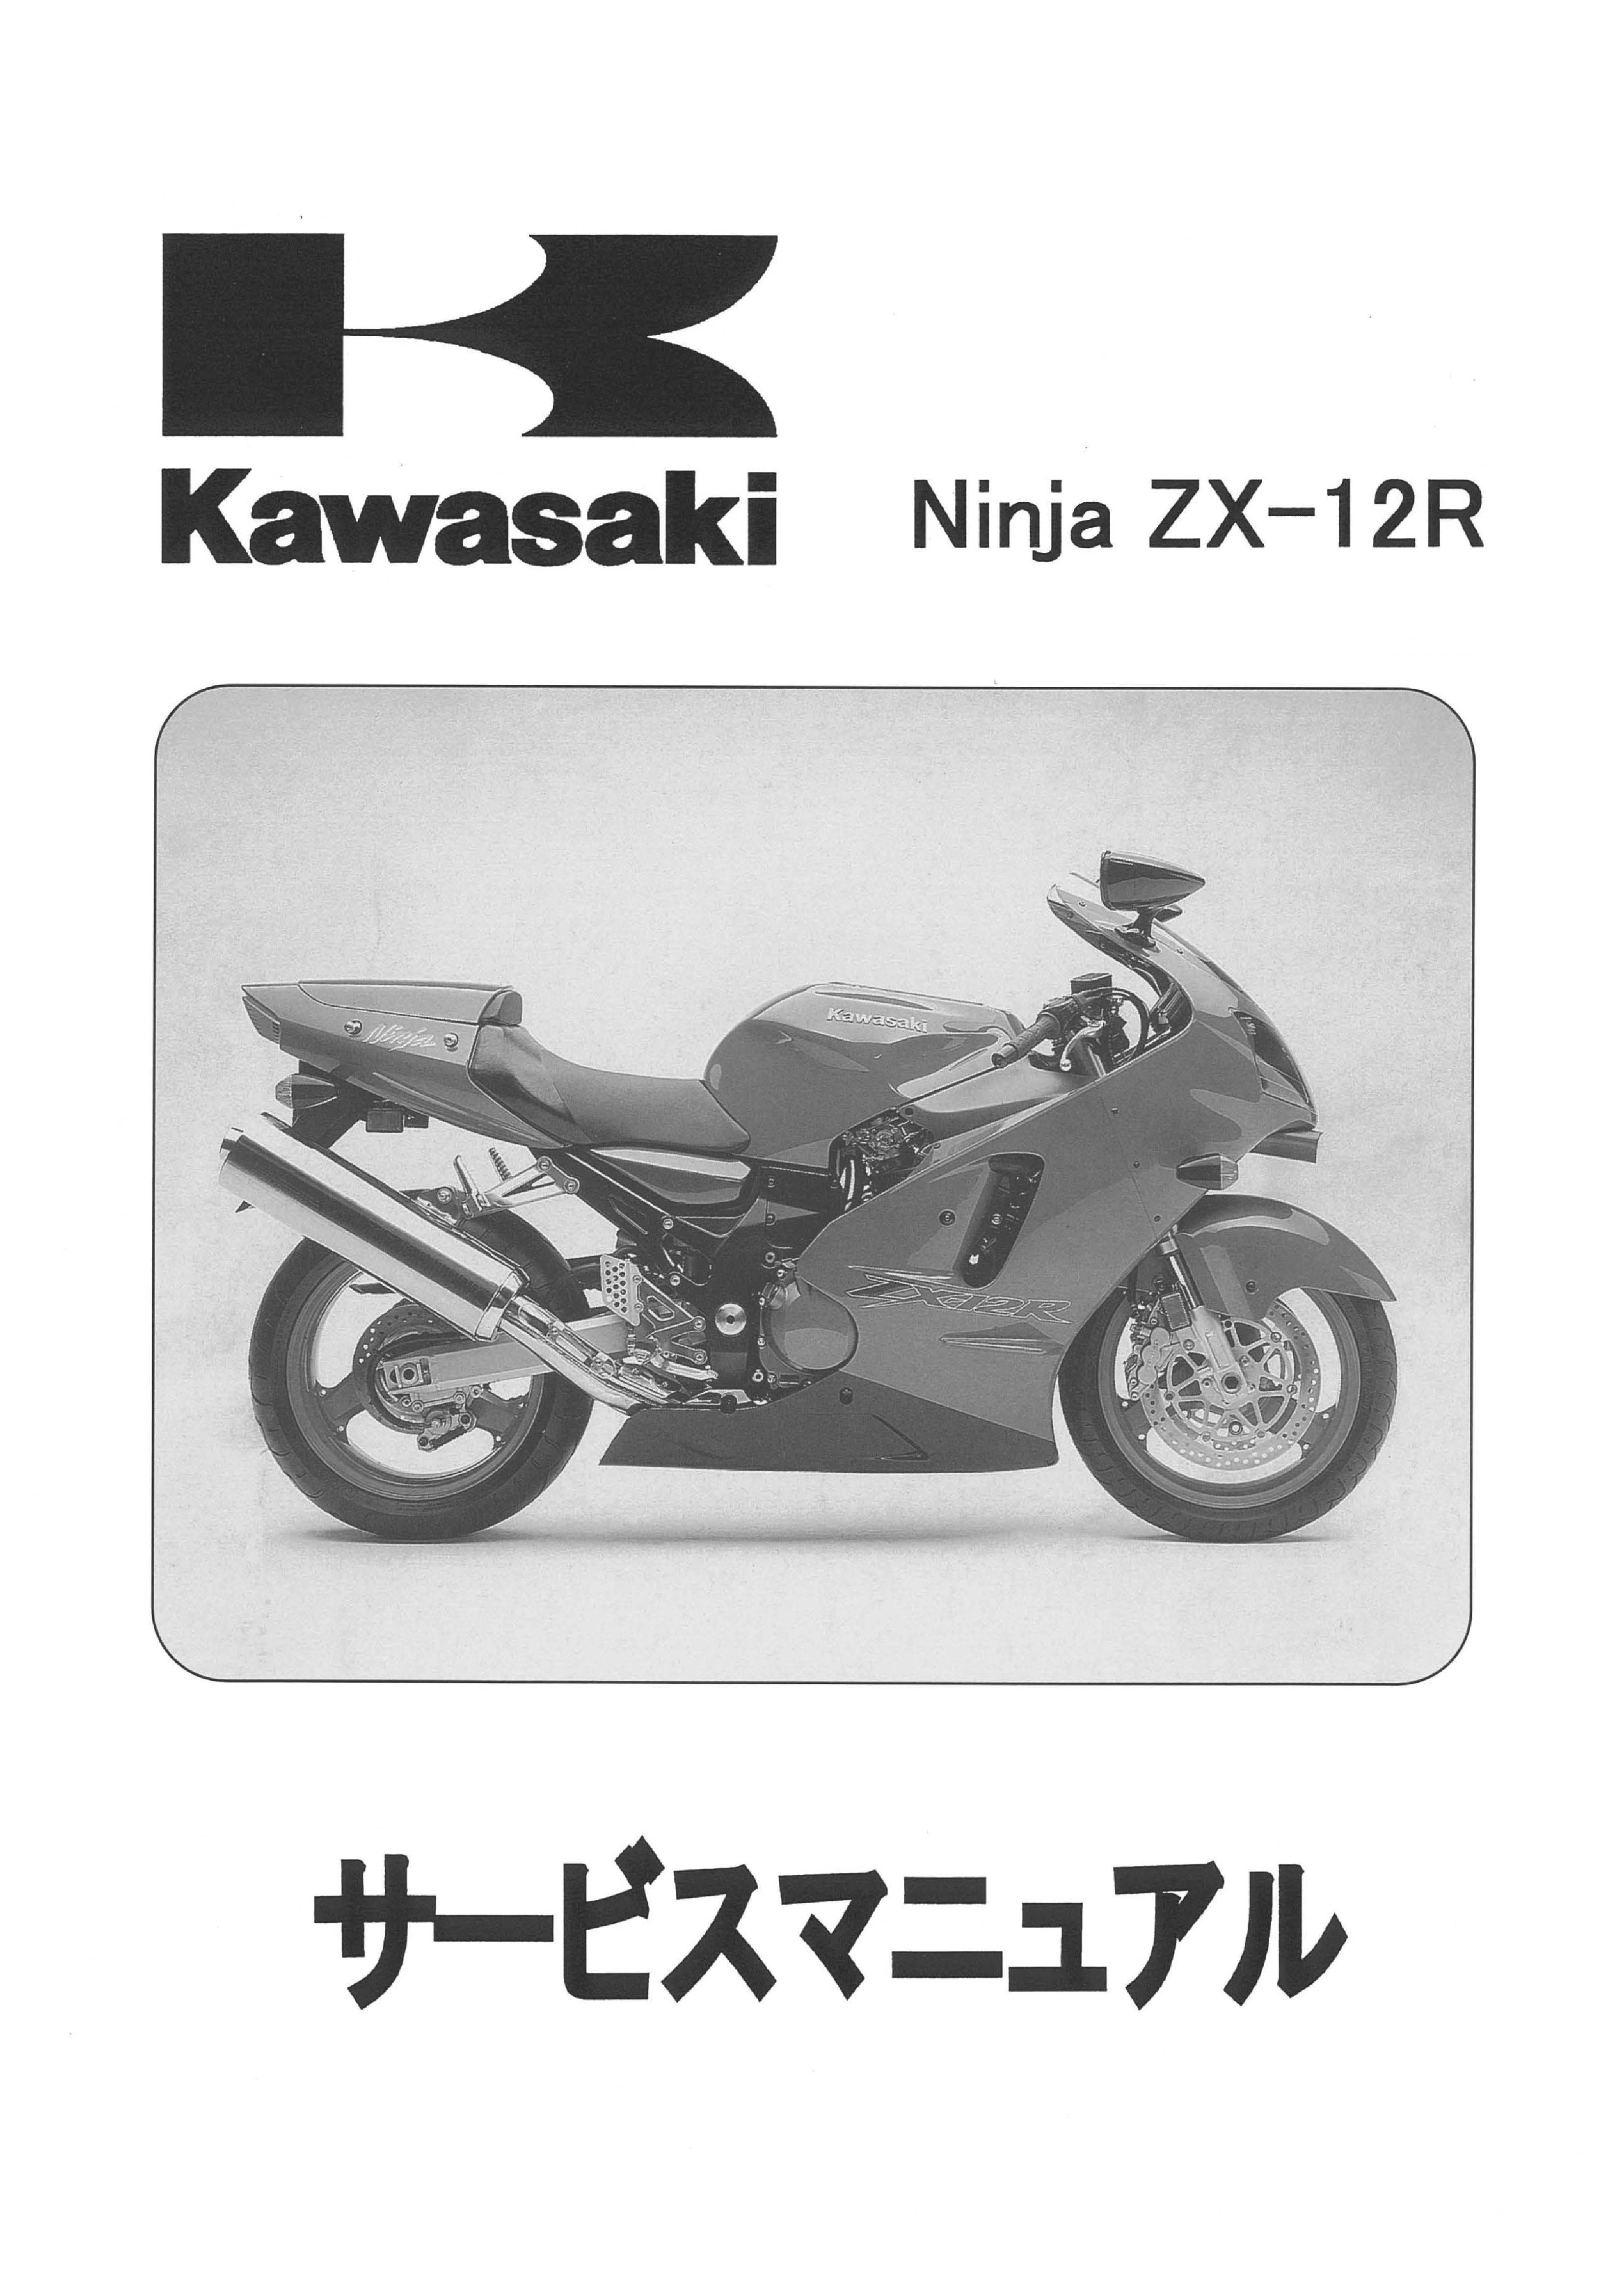 ZX25R サービスマニュアル - カタログ/マニュアル